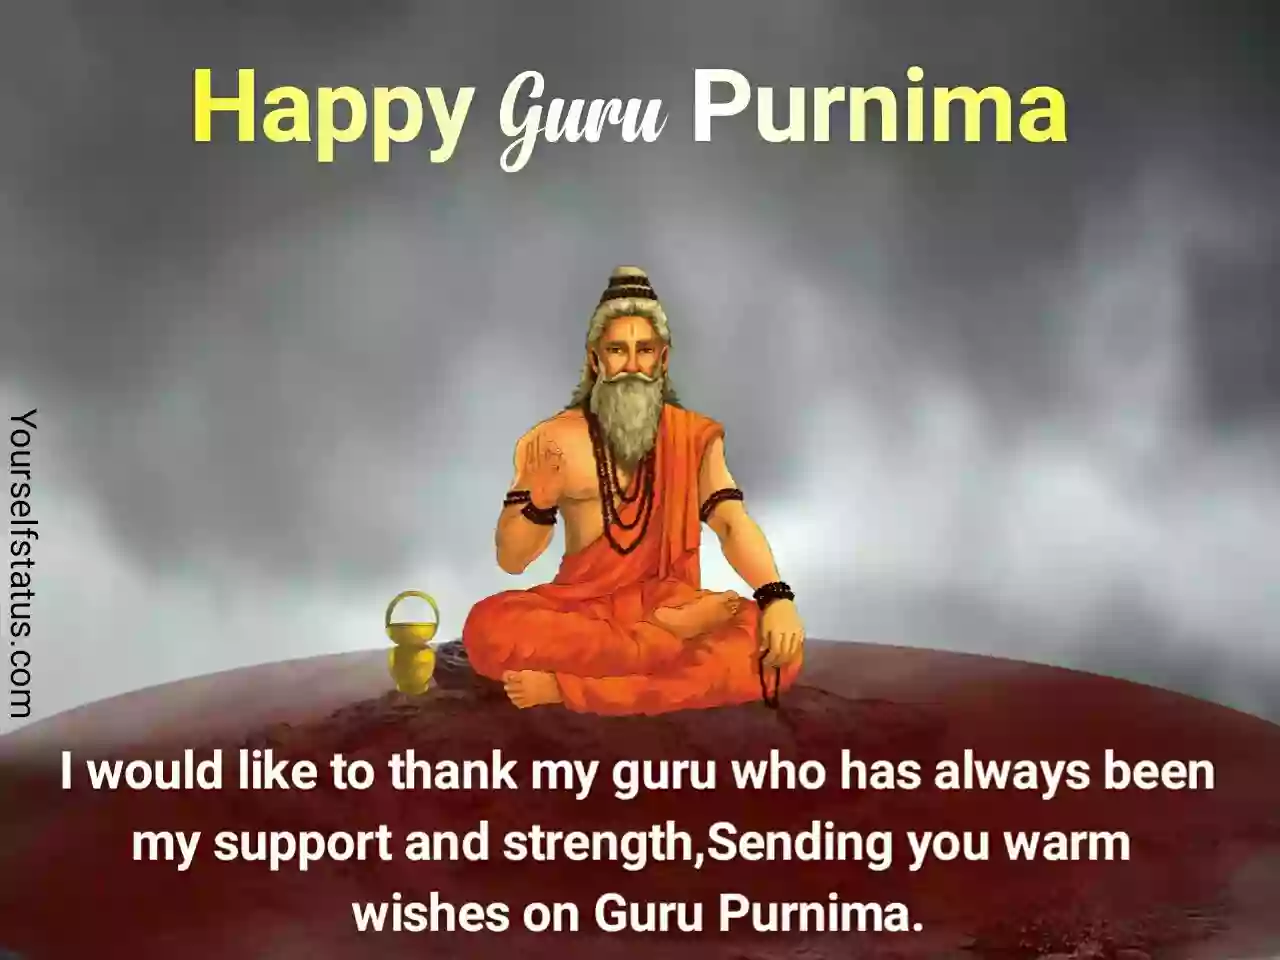 Happy Guru purnima wishes in english